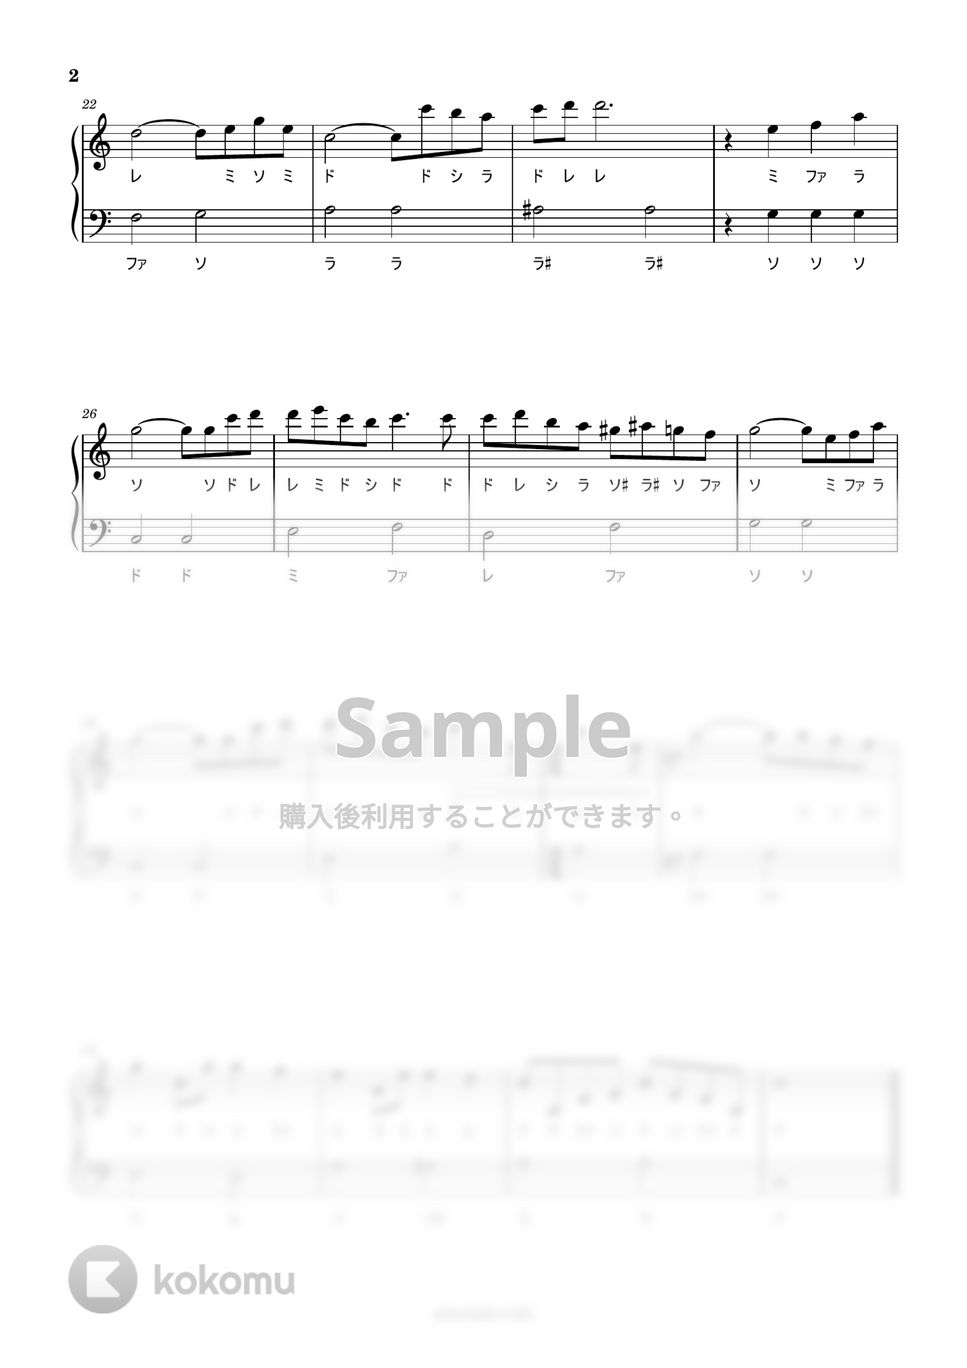 久石譲 - アシタカとサン (ドレミ付き簡単楽譜) by ピアノ塾